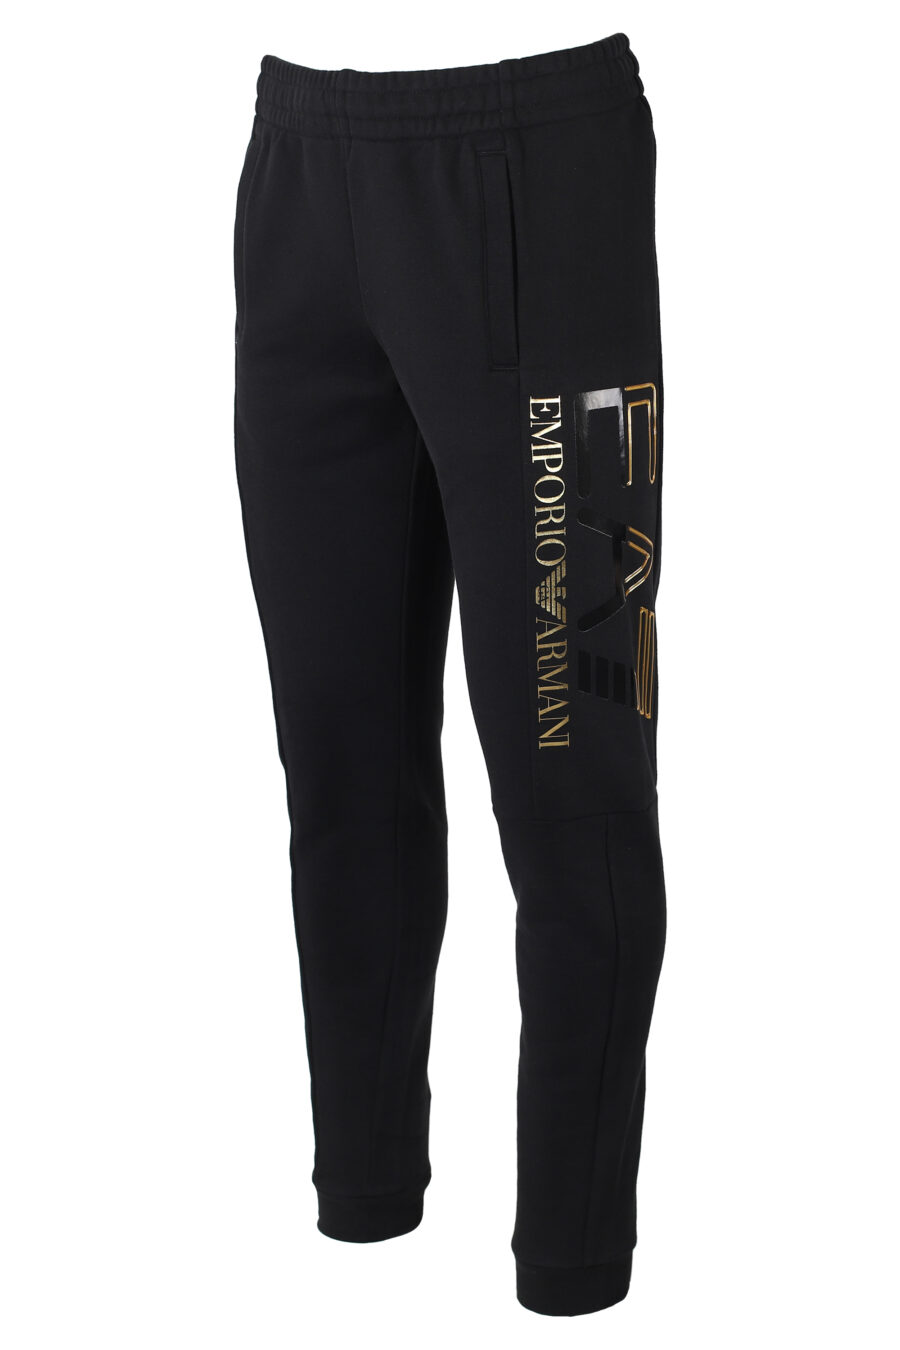 Pantalón de chándal negro con maxilogo bicolor lateral - IMG 9882